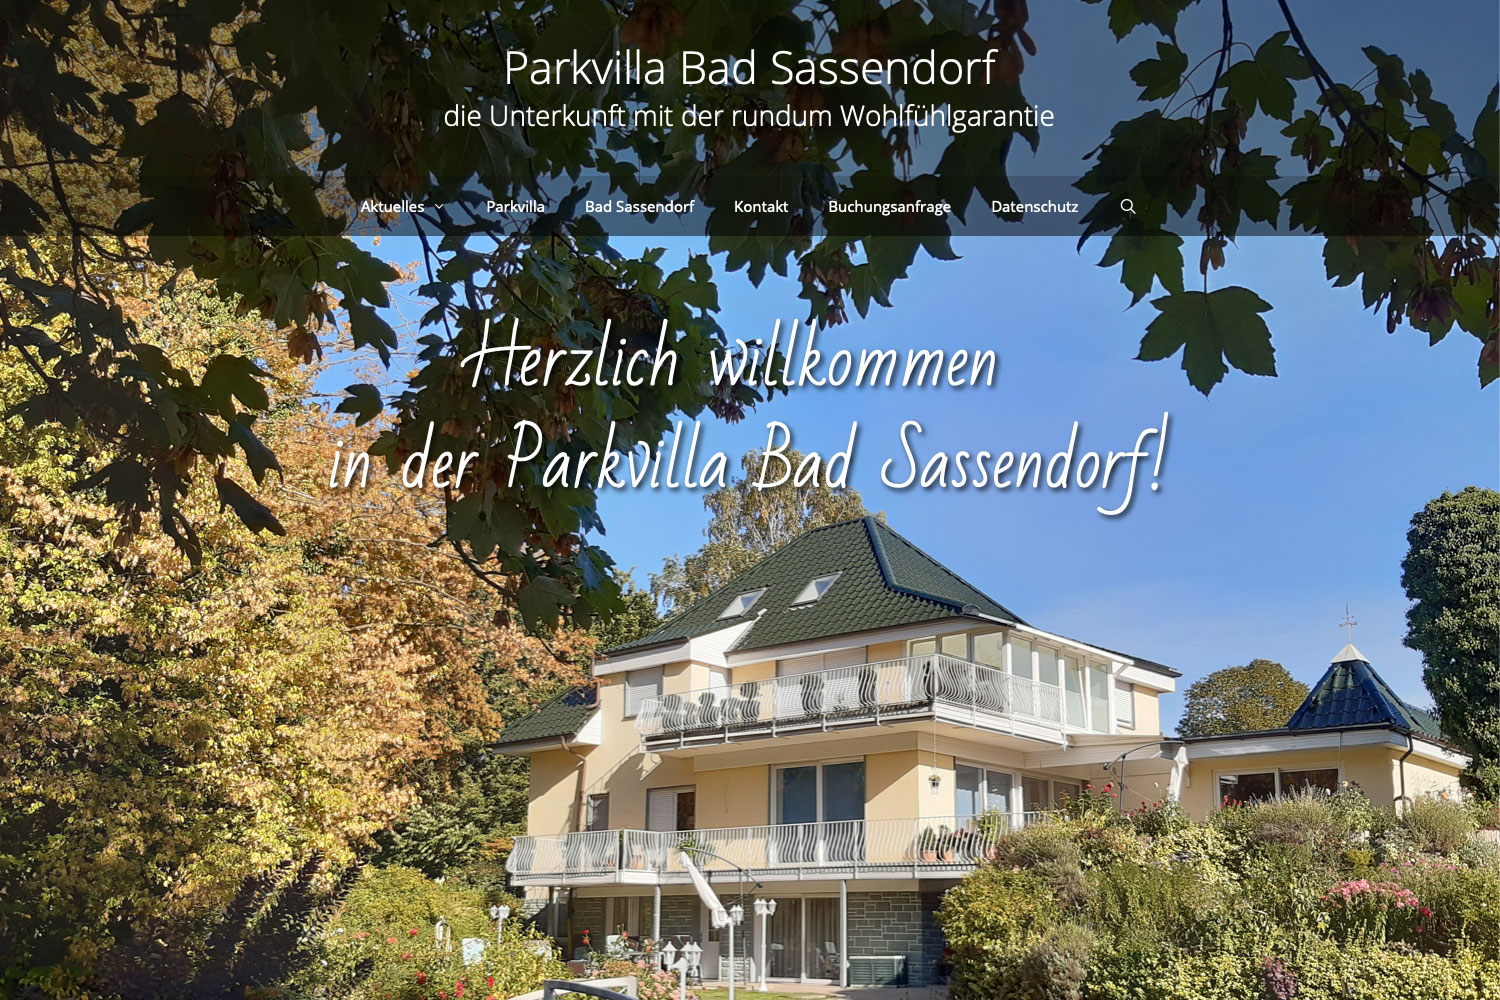 Startseite der Website parkvilla-bad-sassendorf.de (2019)